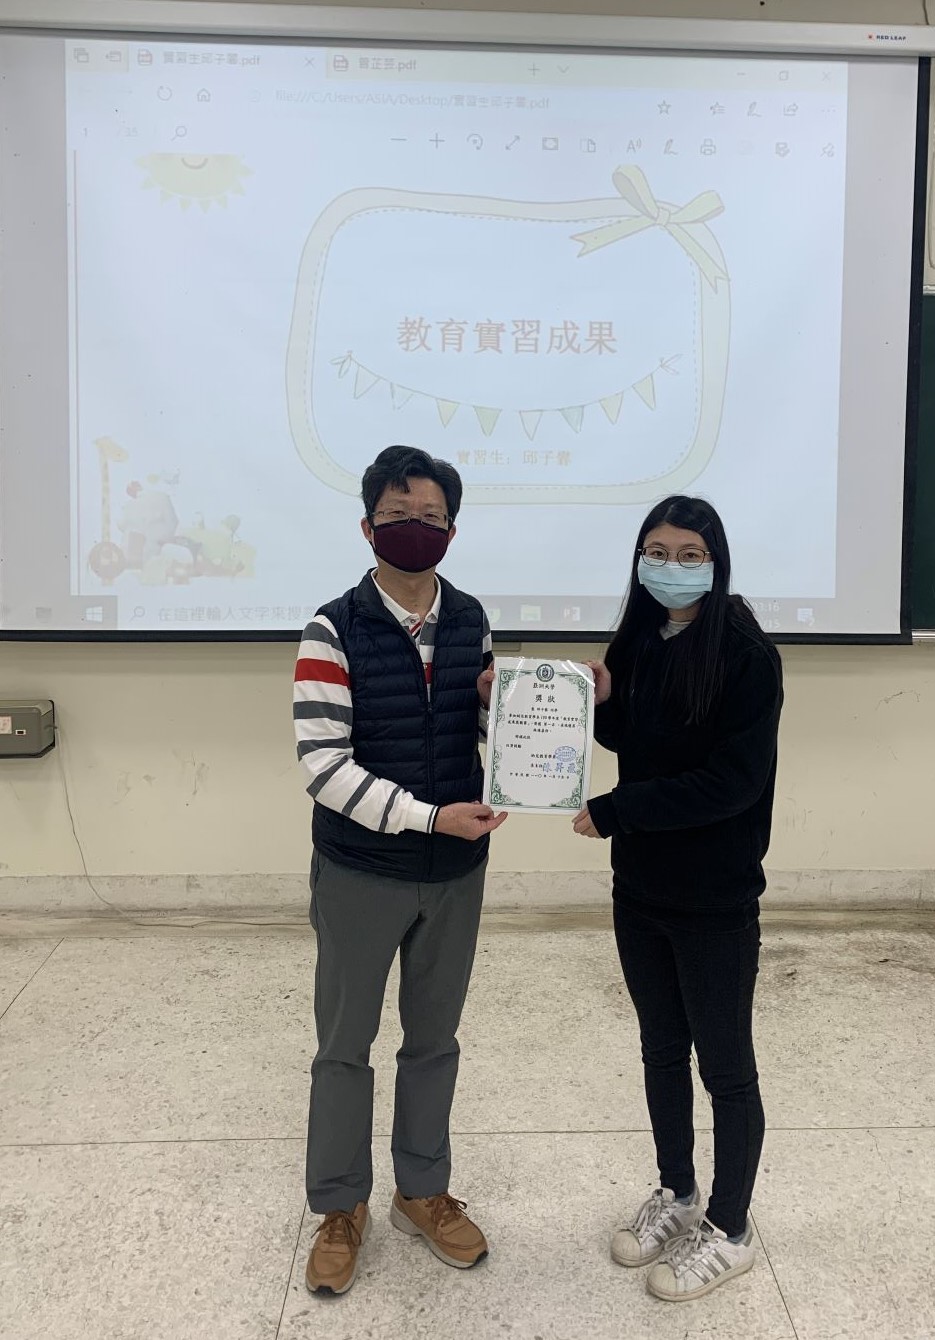 亞大幼教系主任陳昇飛(左)頒發第一名獎狀給邱子馨同學。